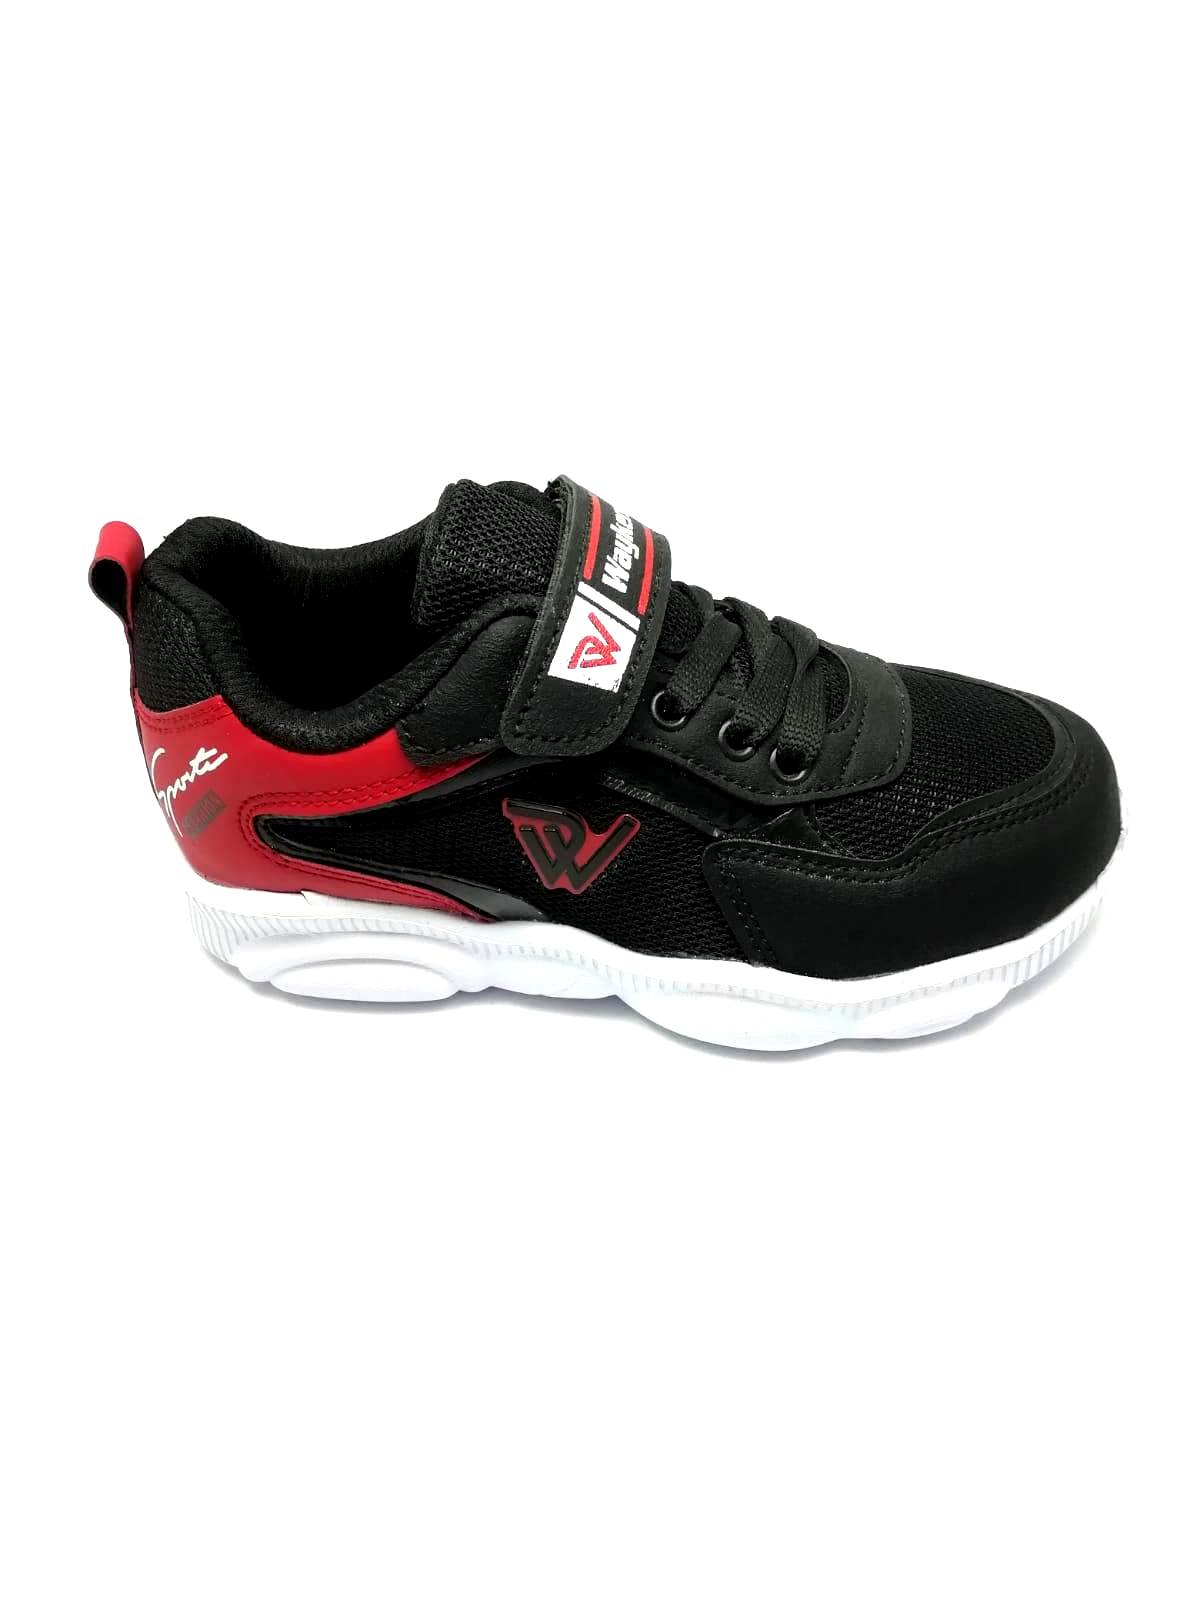 Waykers Siyah-Kırmızı Erkek Çocuk Spor Ayakkabı